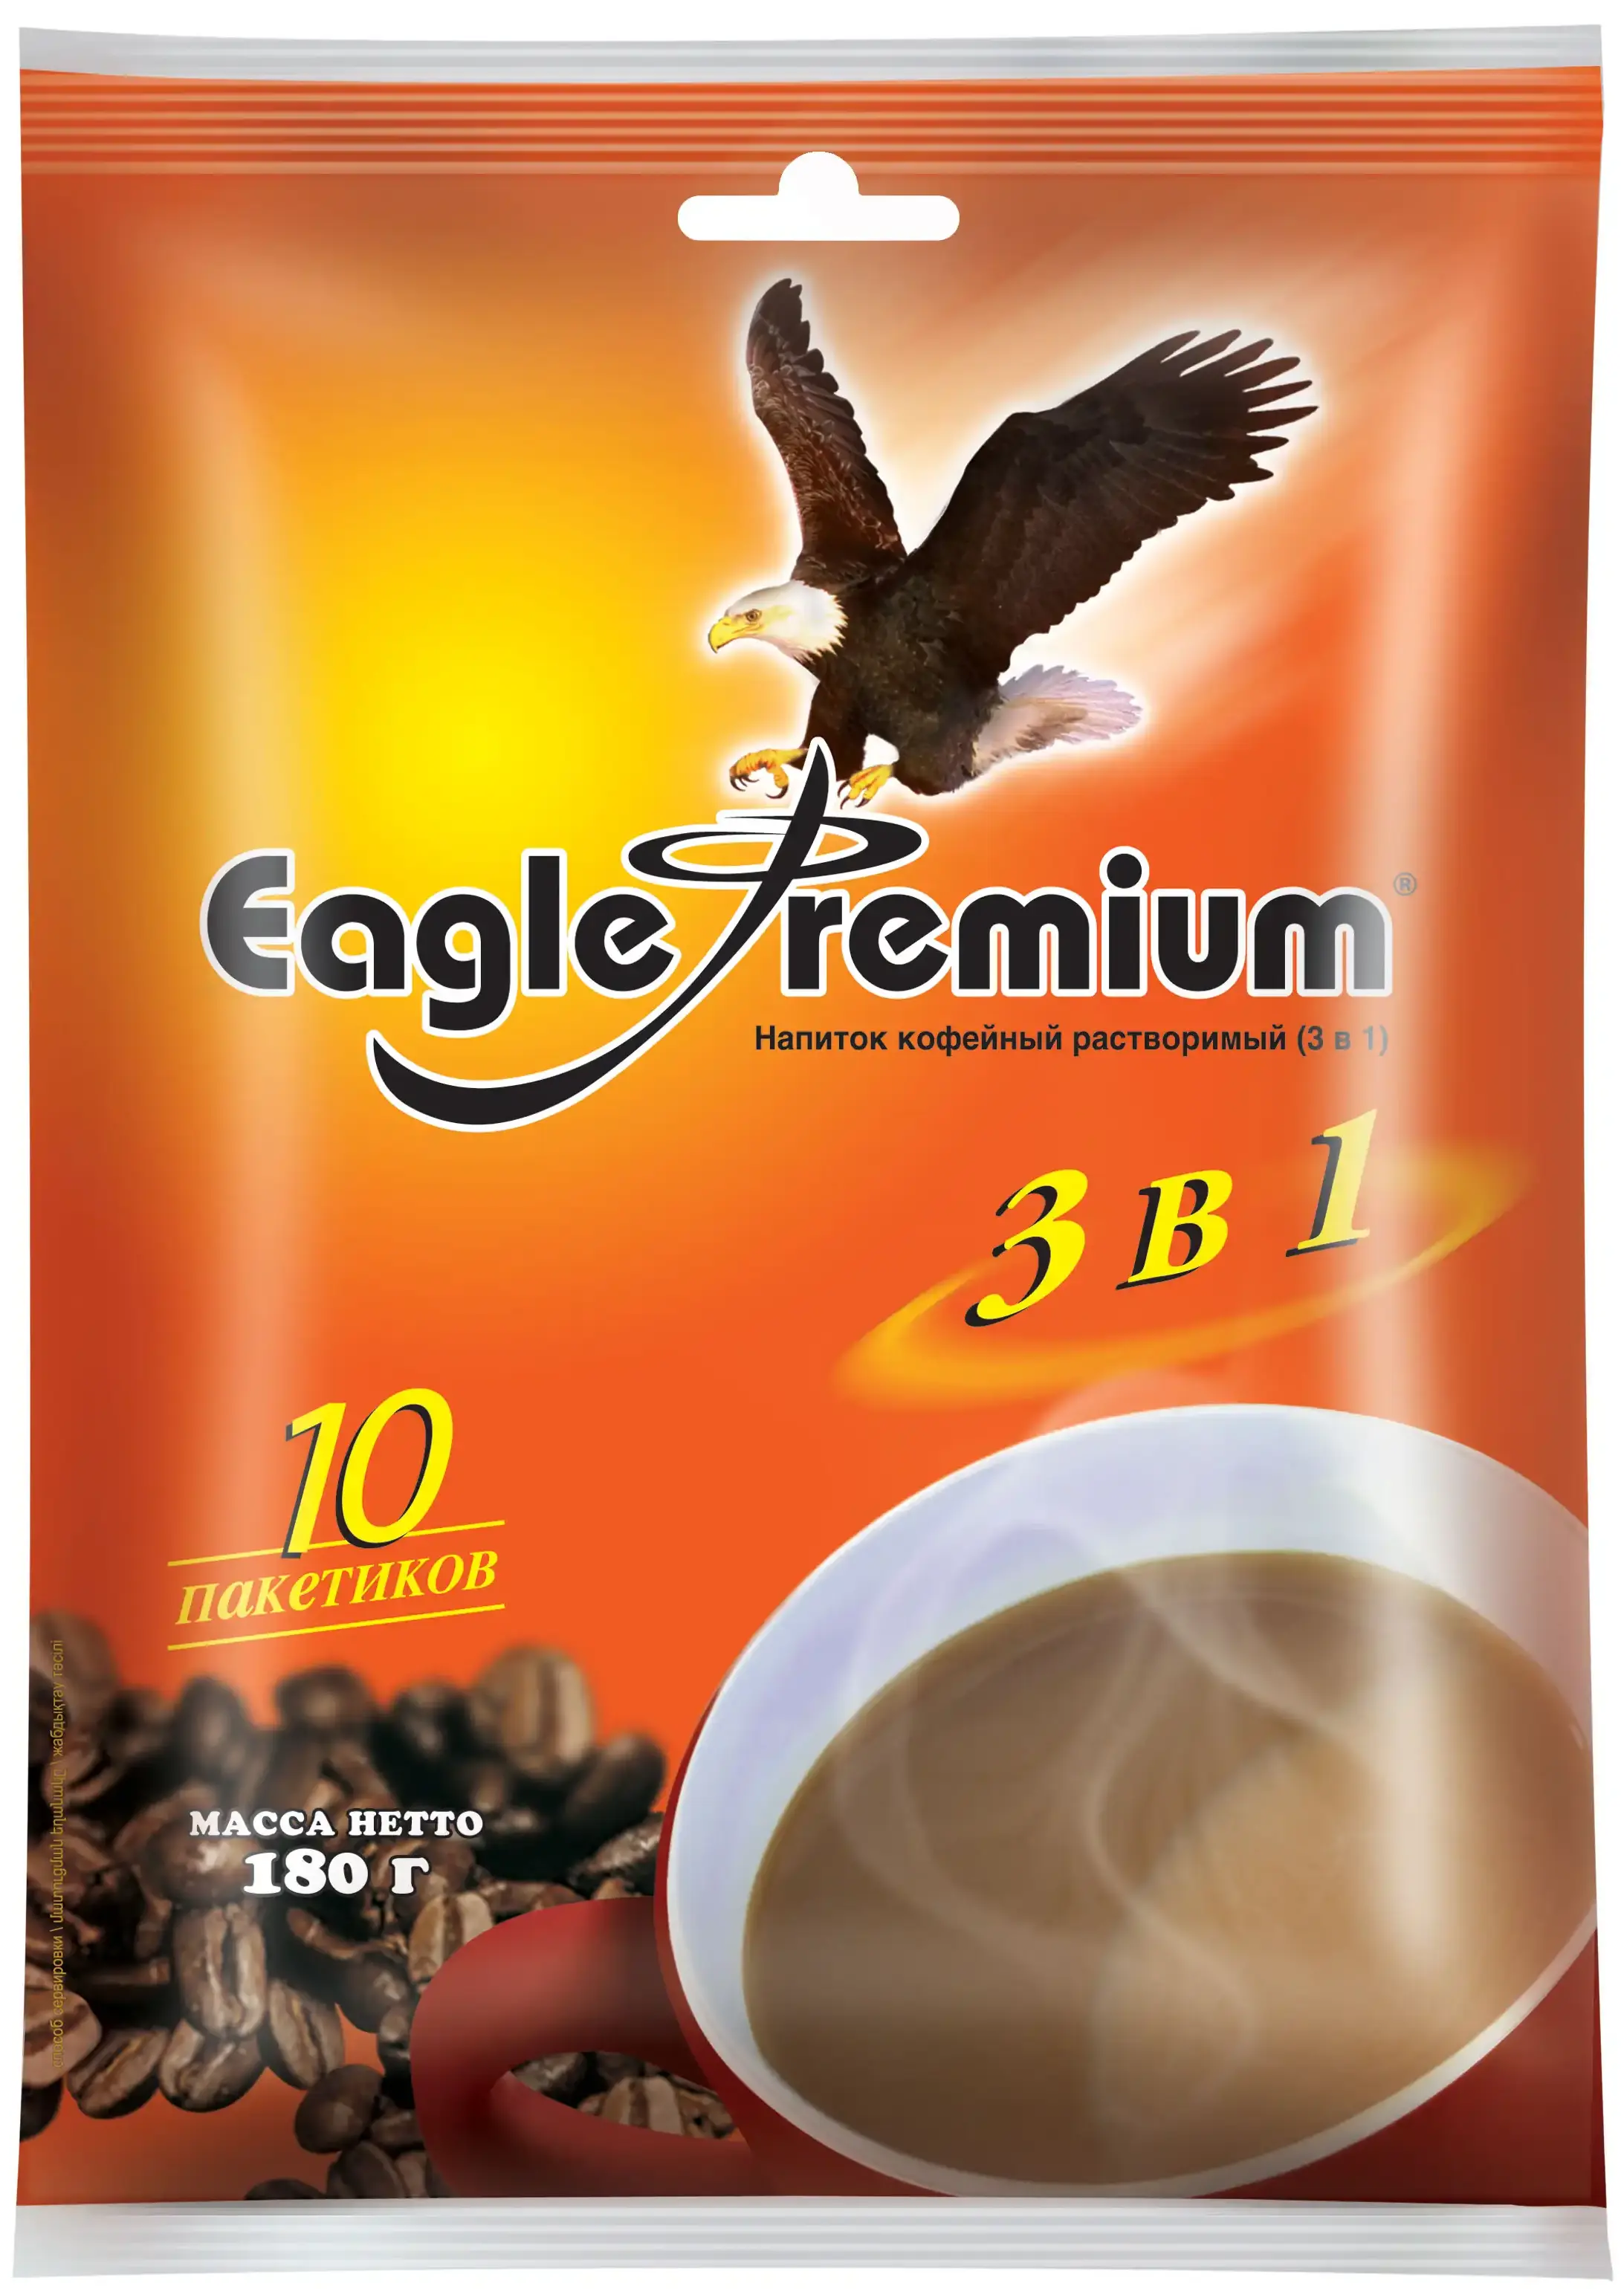 Напиток кофейный растворимый 3в1 Eagle Premium 10 пакетиков 180г